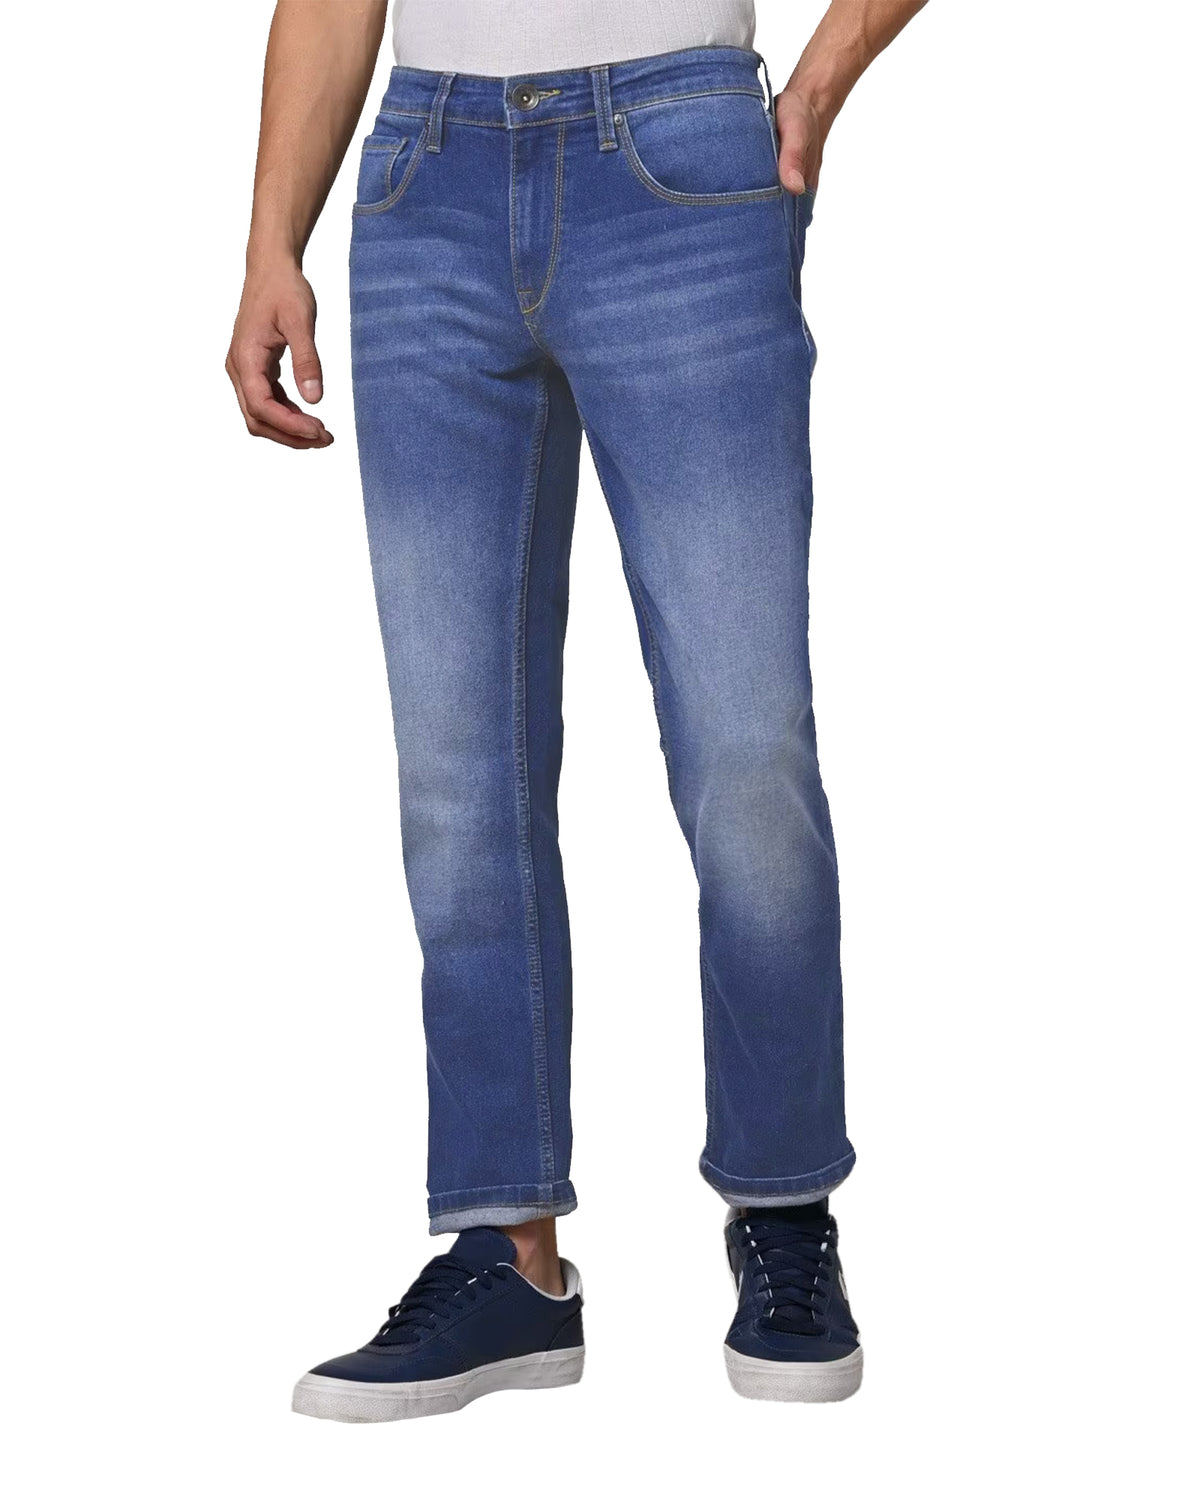 Men's Acid Wash Denim Jeans